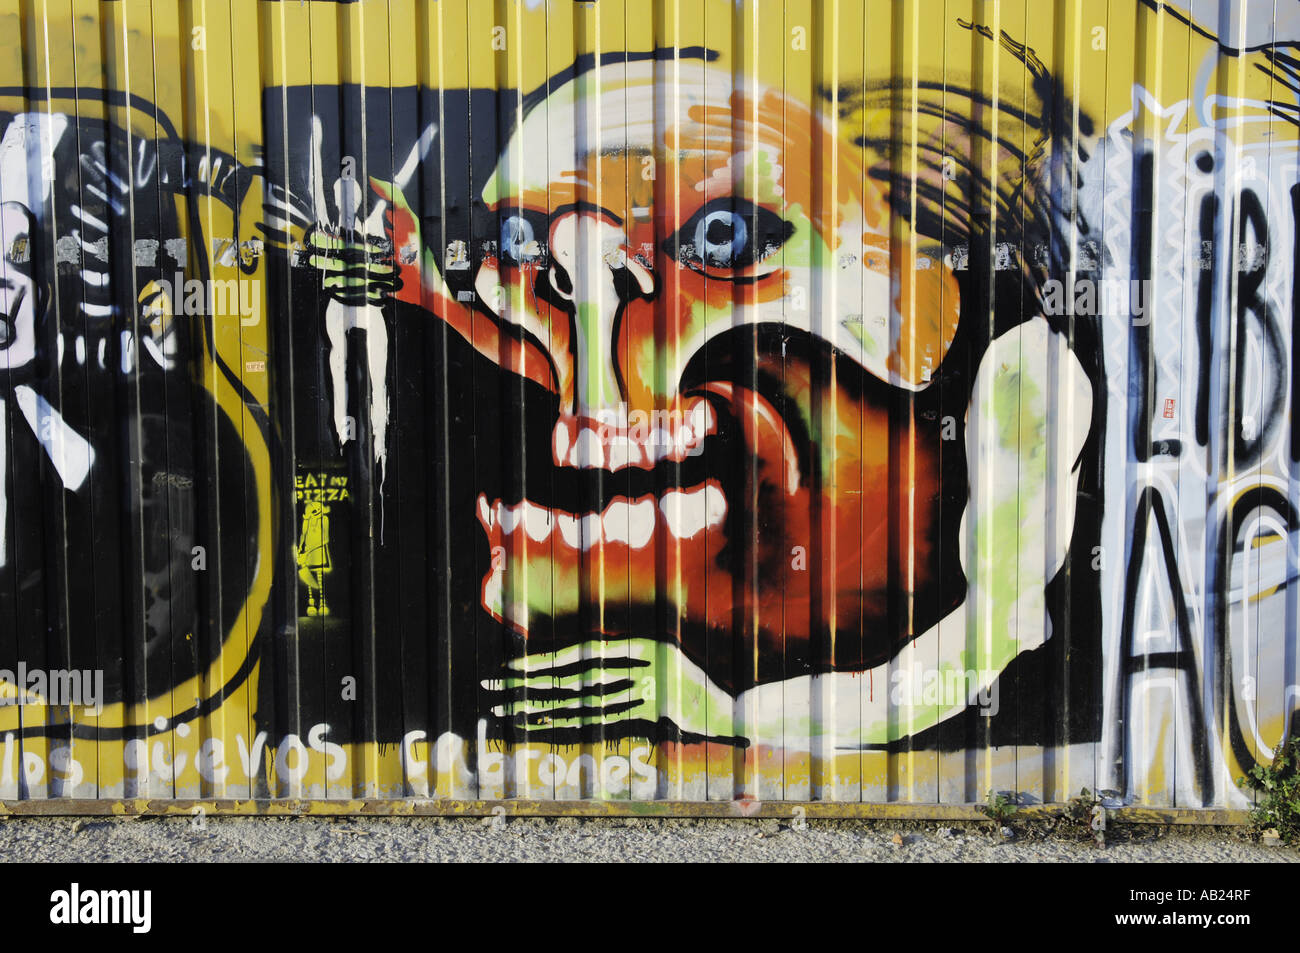 Download 440 Koleksi Gambar Grafiti Barcelona Terbaru Gratis HD